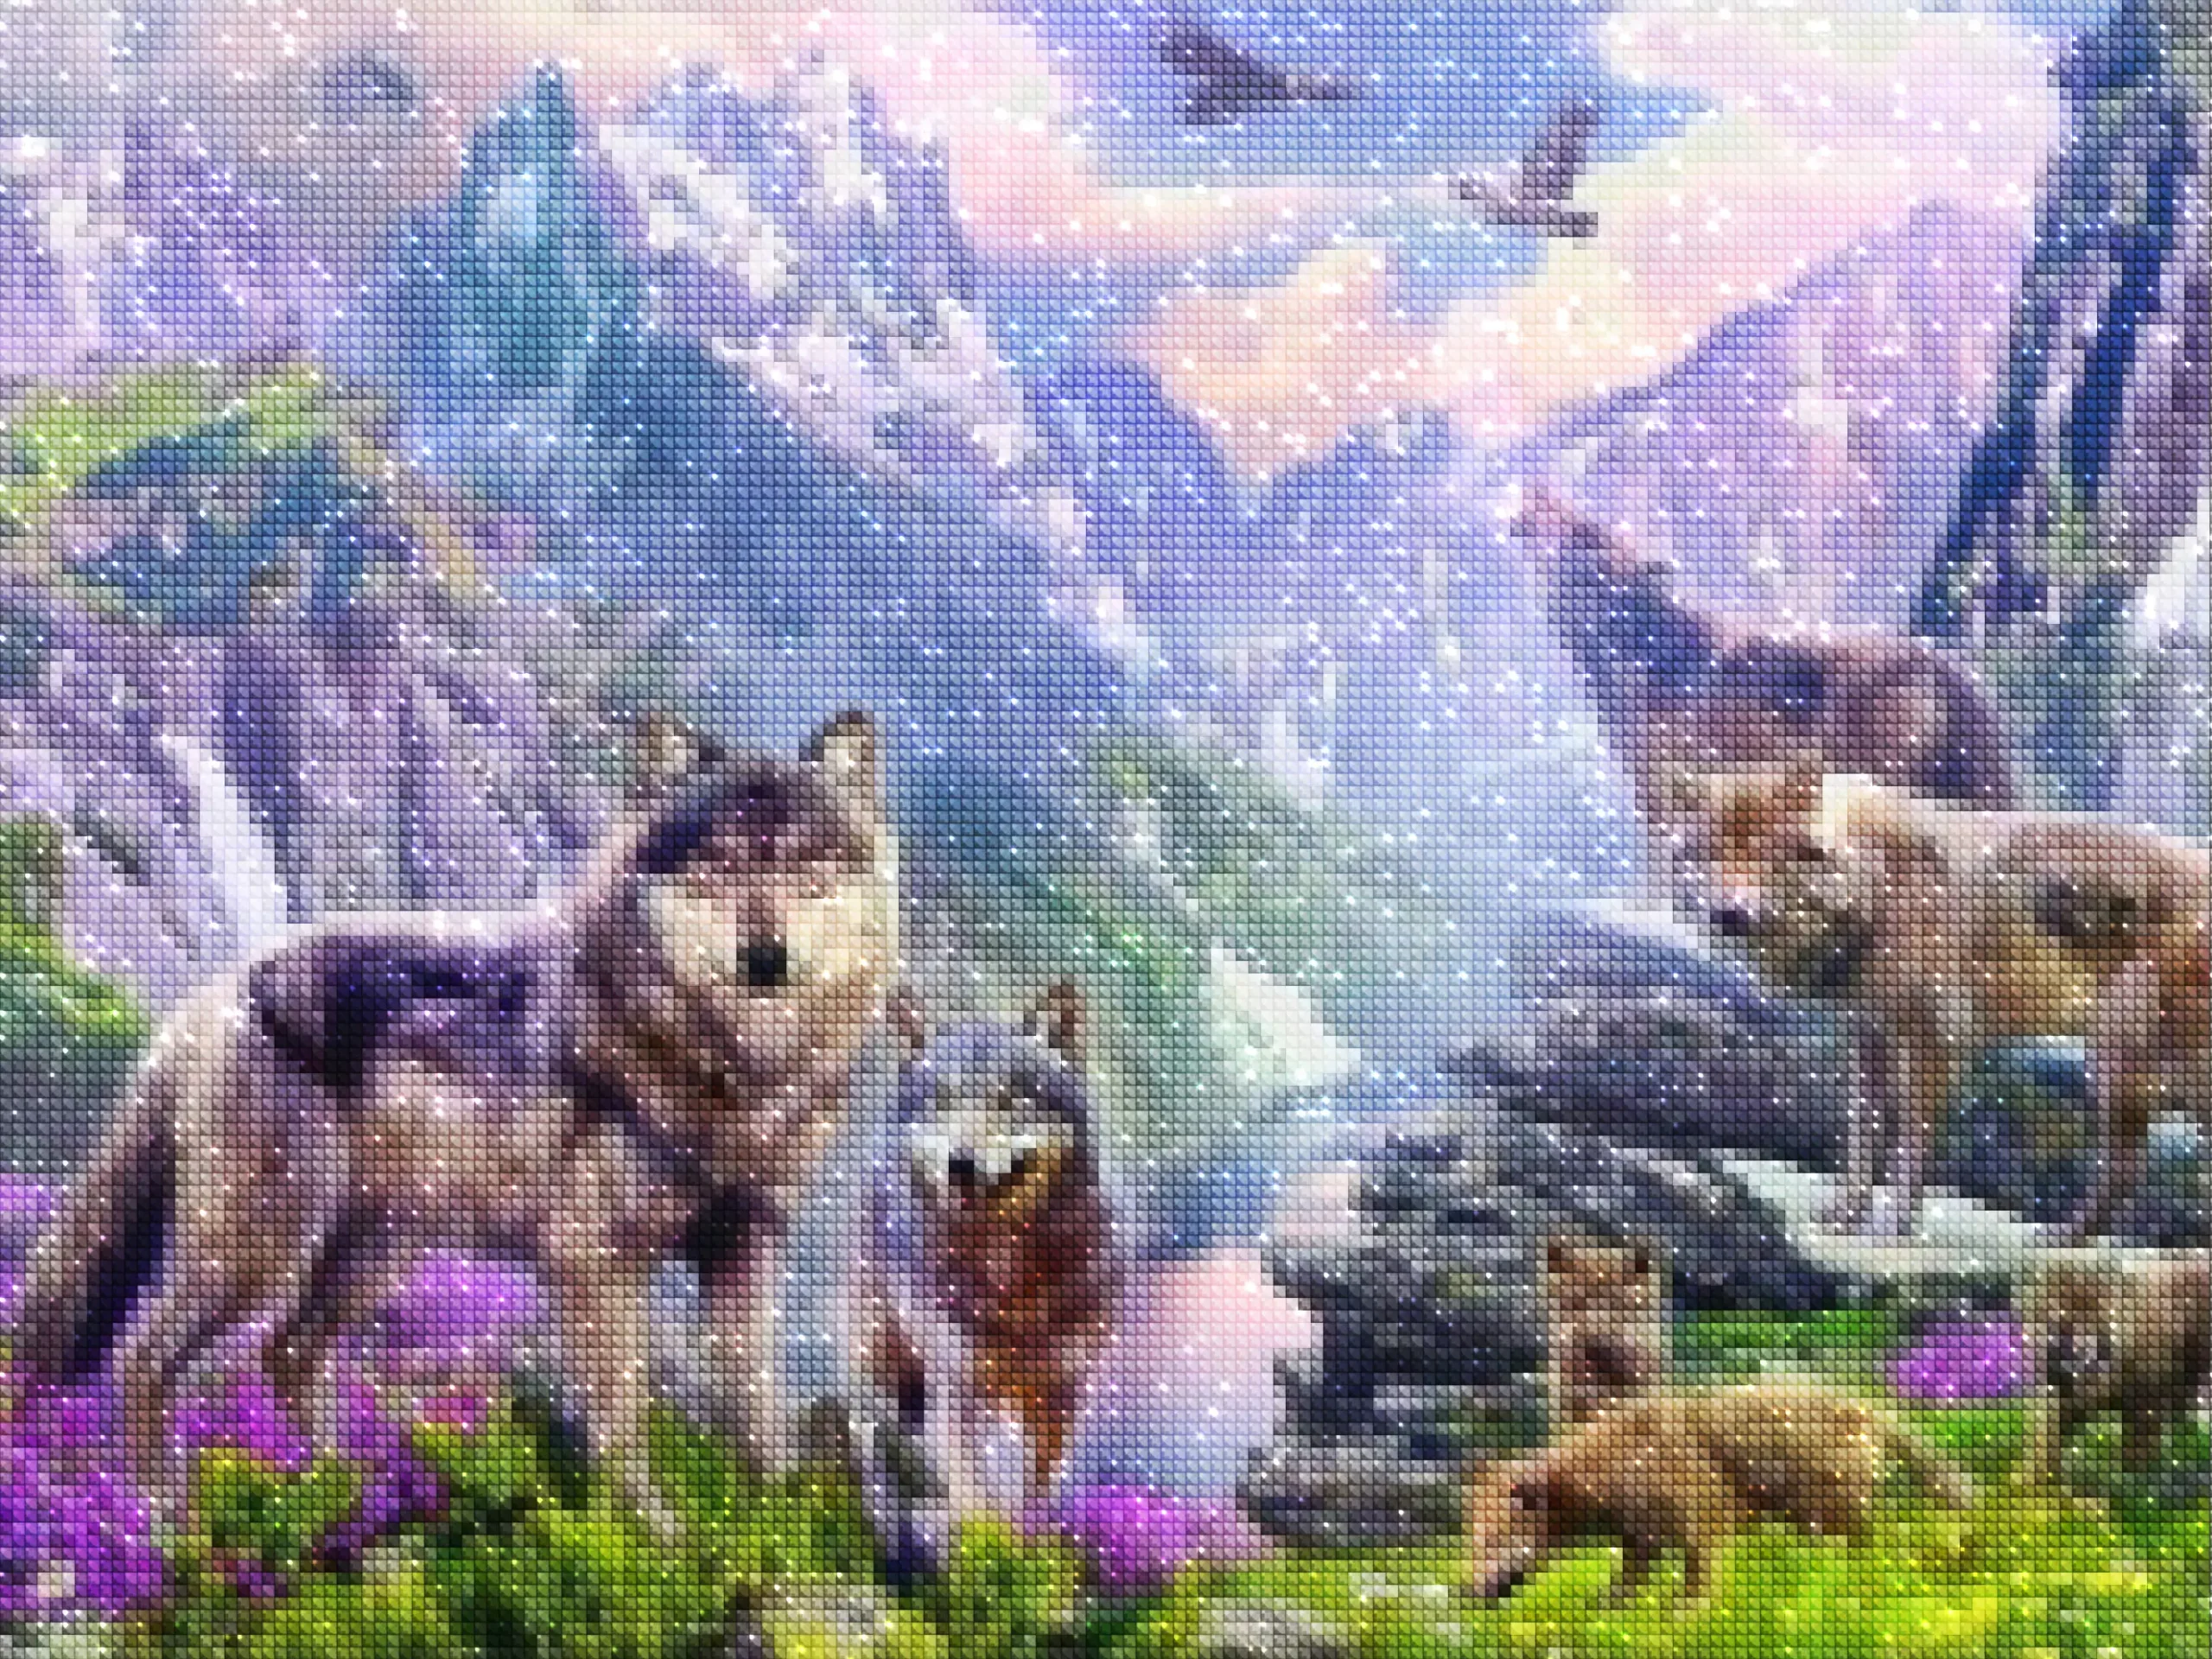 diamantes-mago-kits-de-pintura-de-diamantes-Animales-Lobo-Manada de lobos en las montañas-diamonds.webp